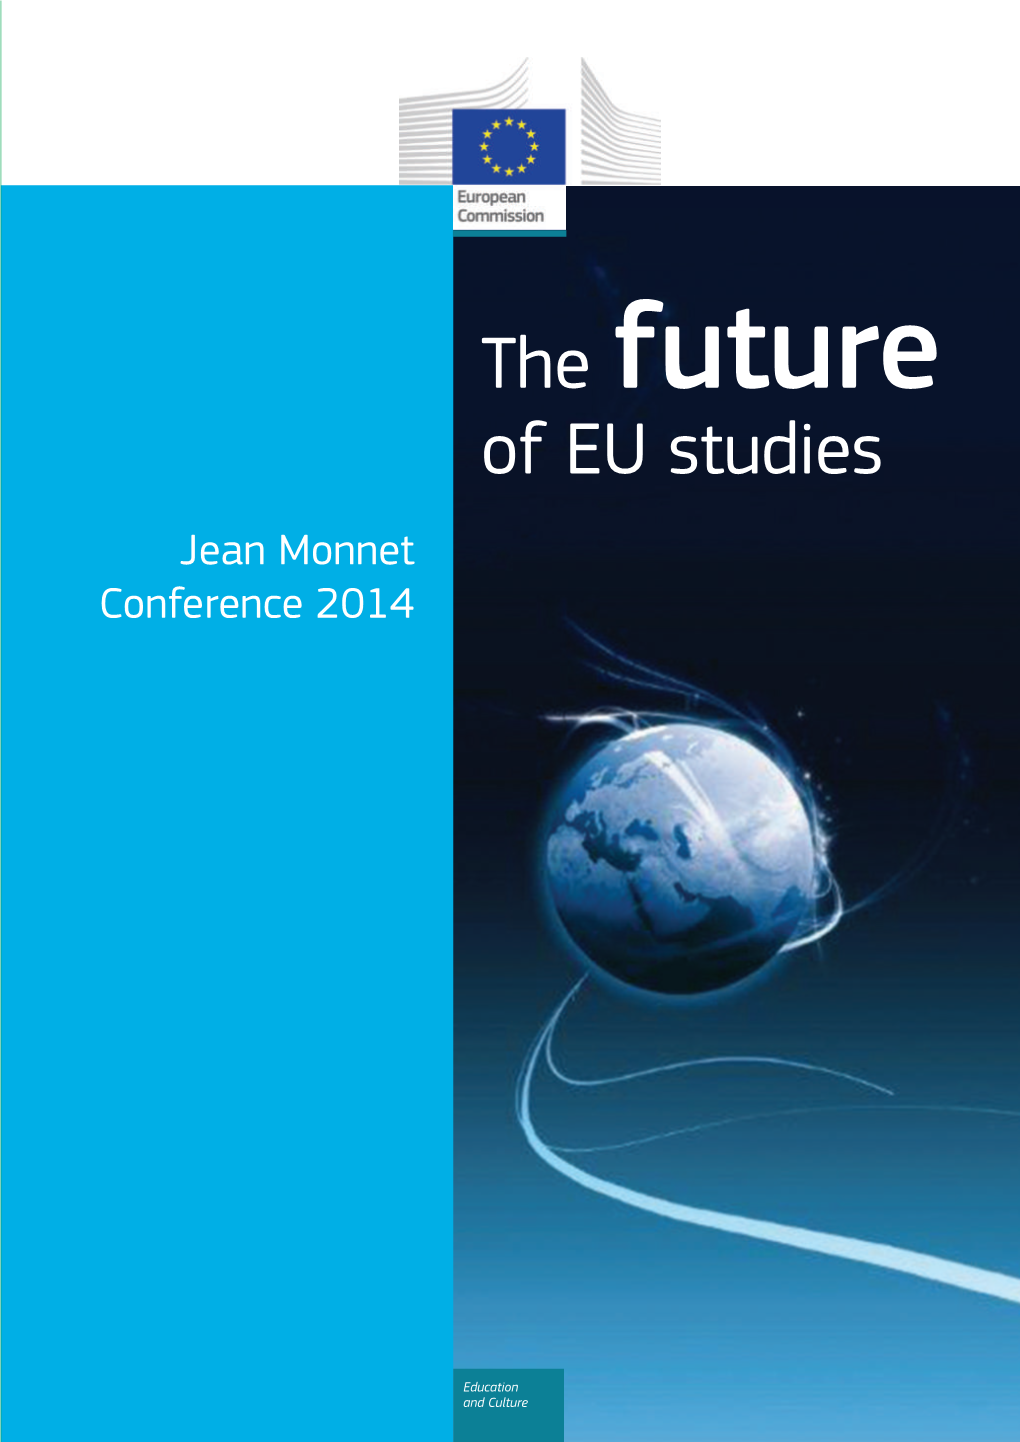 Jean Monnet Conference 2014